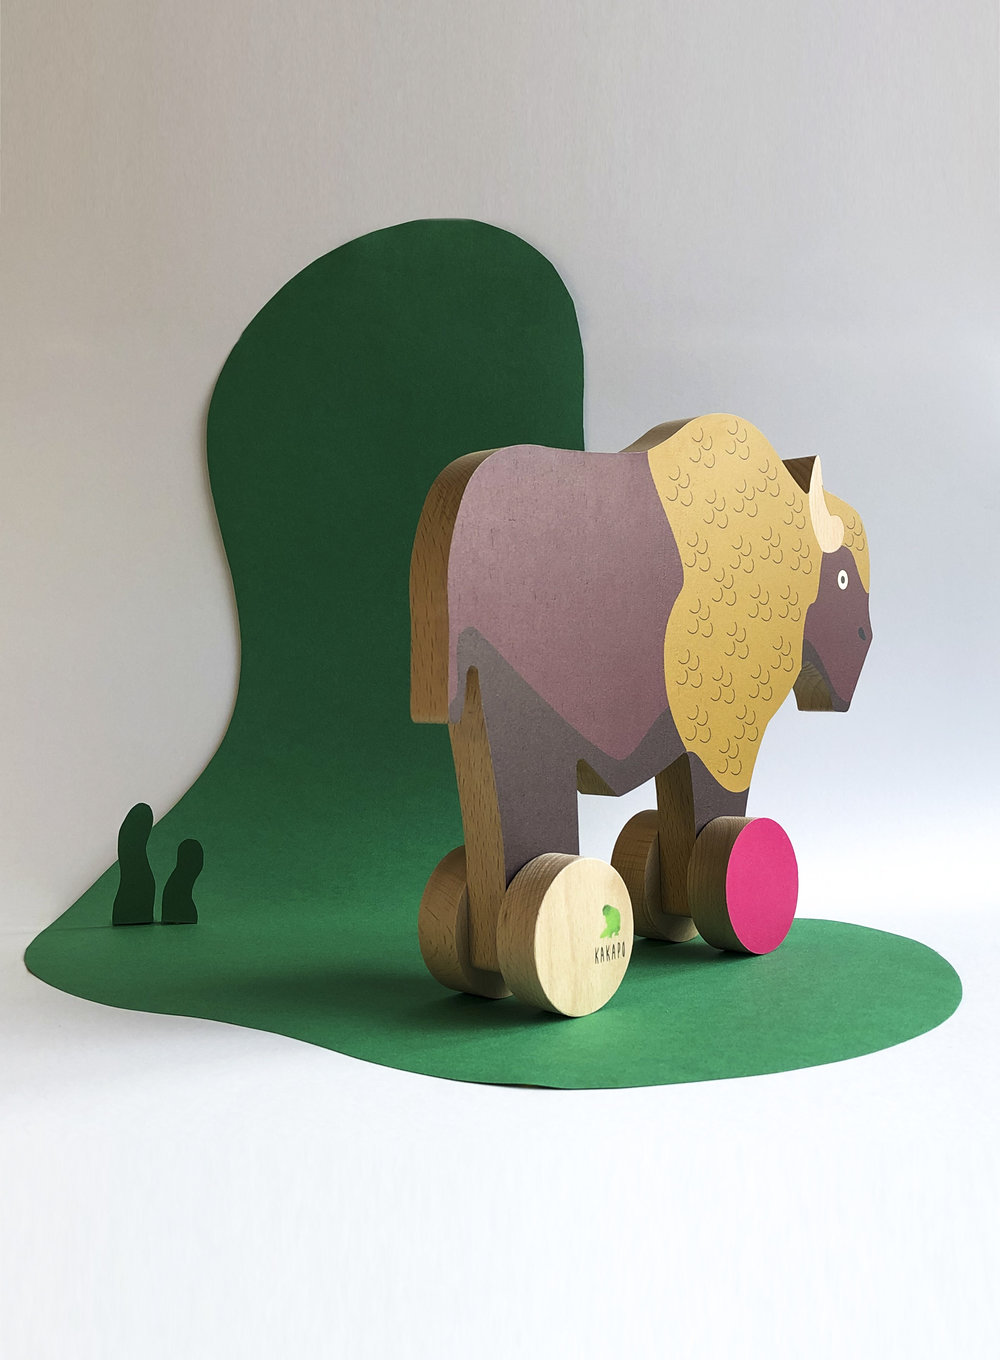 Les animaux rares de KAKAPO - Des jouets en bois artisanaux et des jeux  fabriqués en France pour sensibiliser les enfants à la protection de la  Nature.